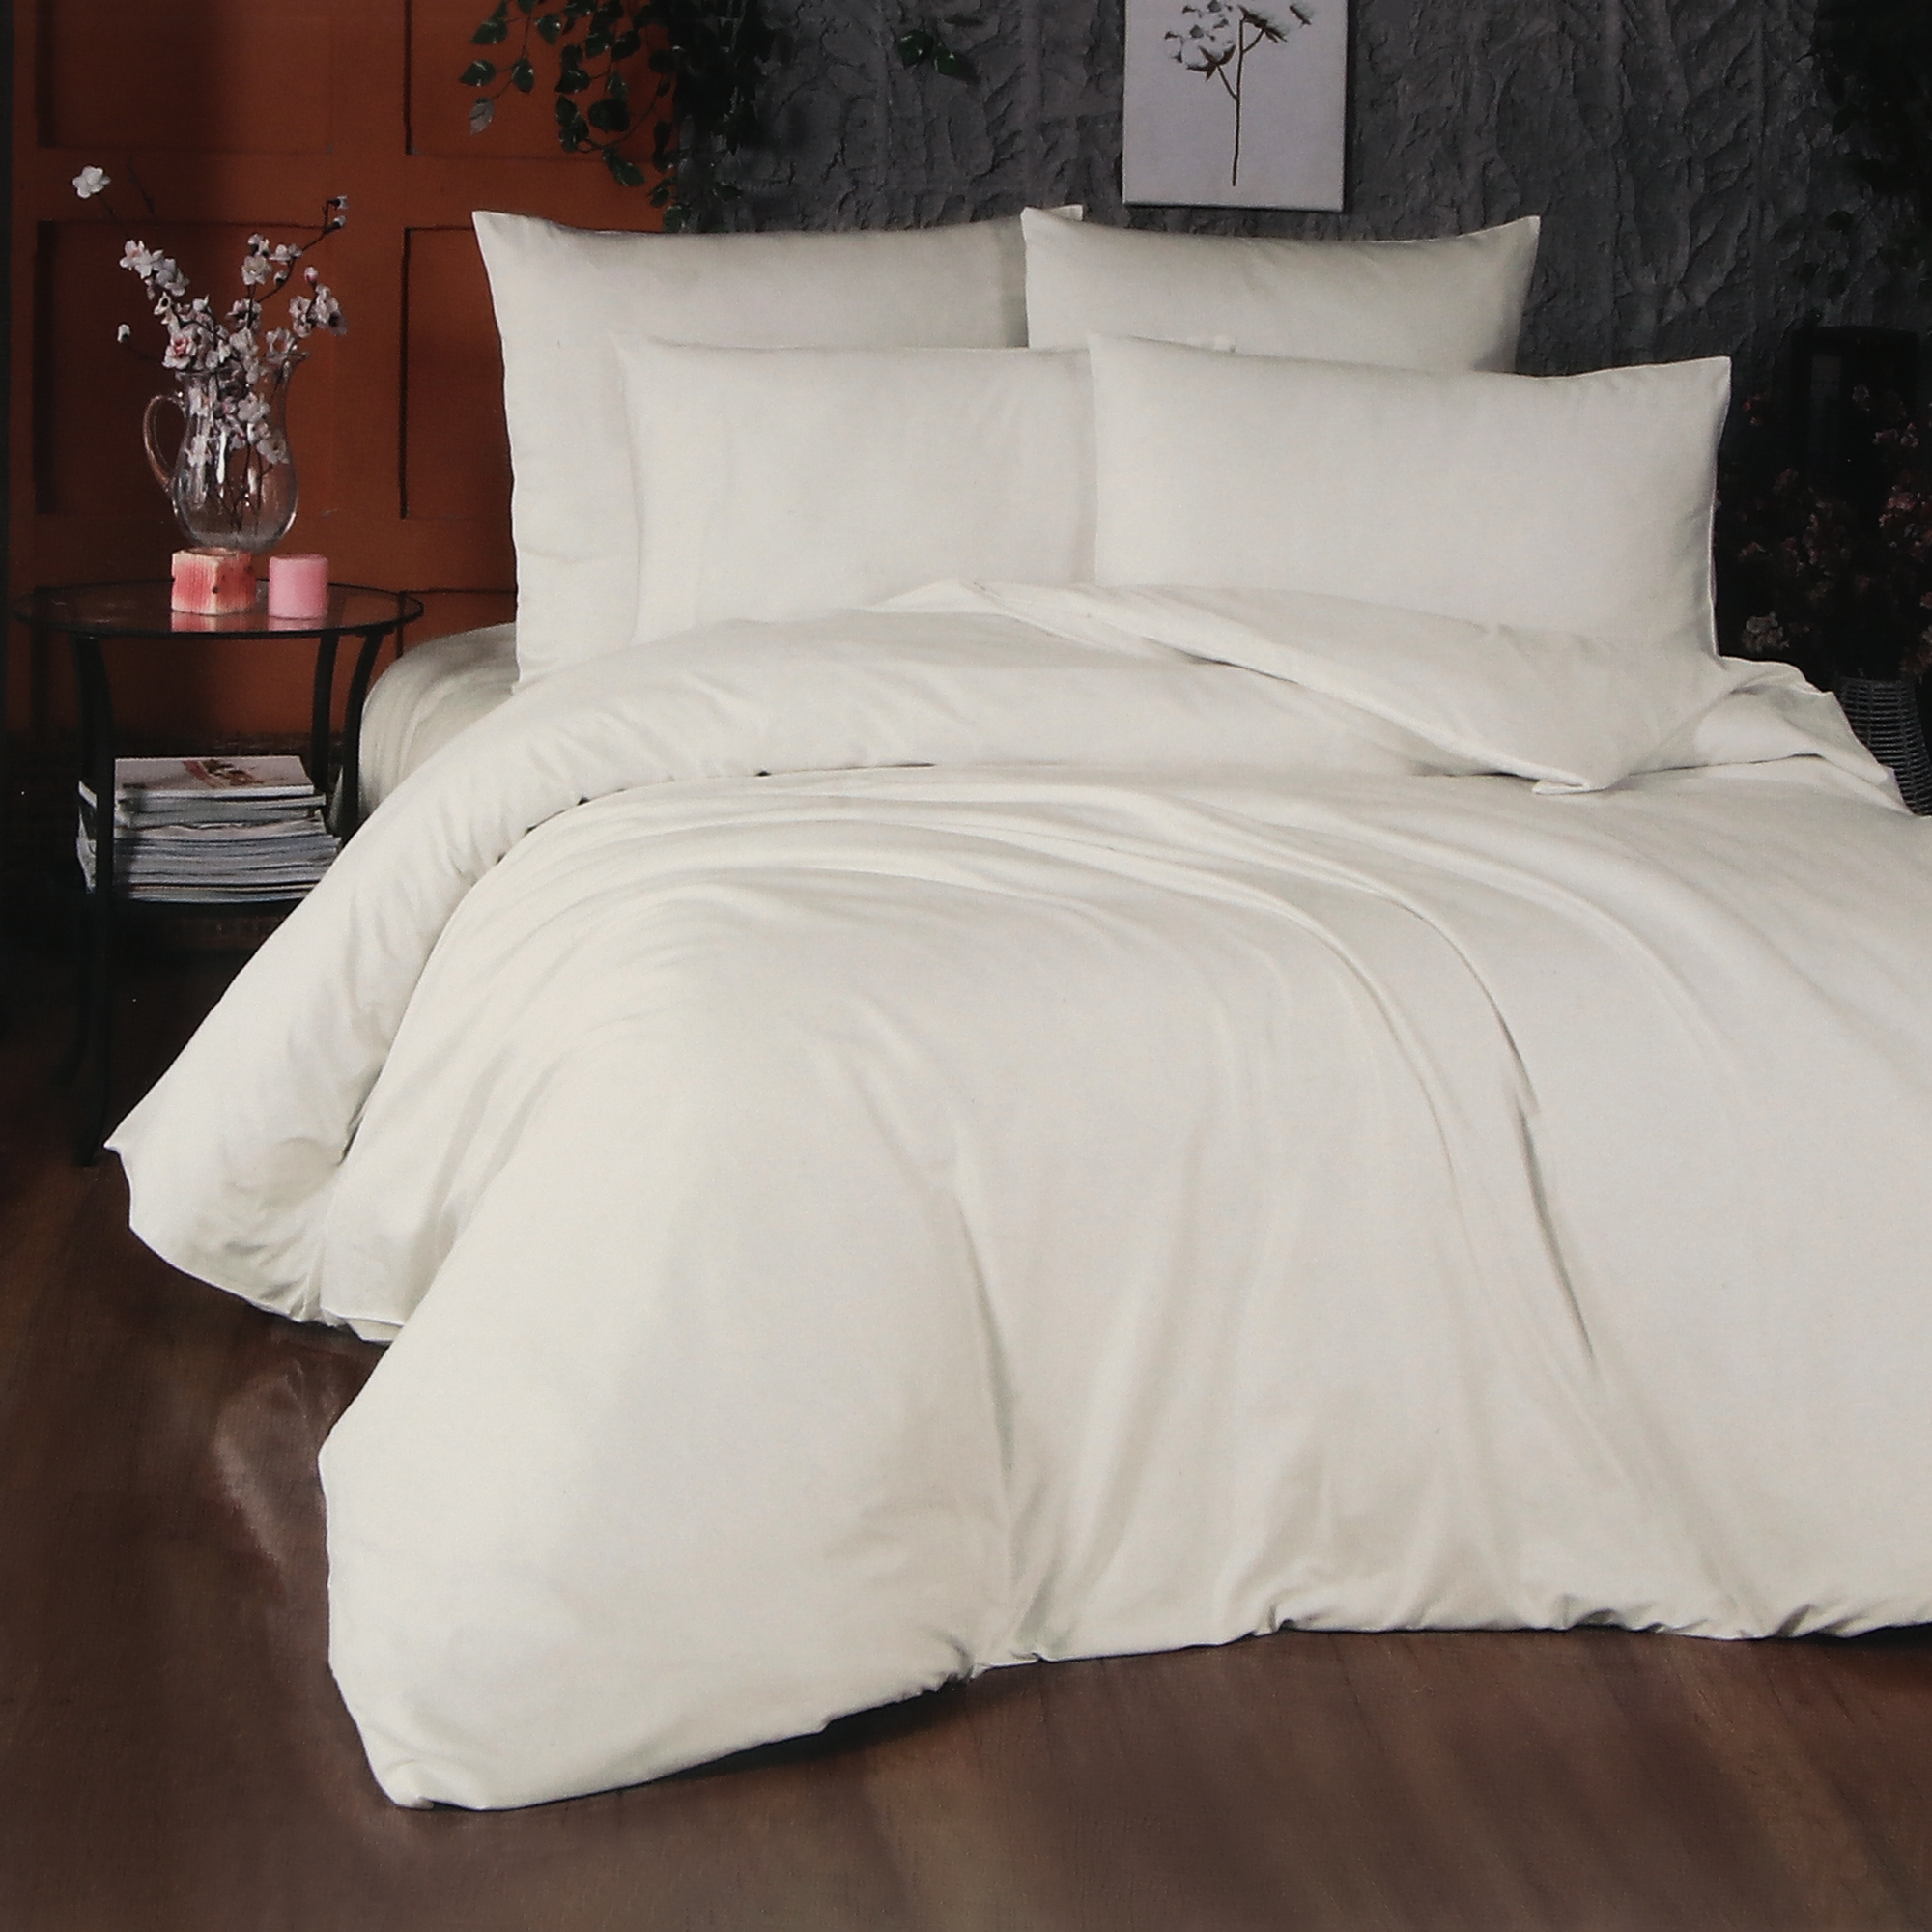 Комплект постельного белья La Besse Ранфорс кремовый Кинг сайз, размер Кинг сайз - фото 1